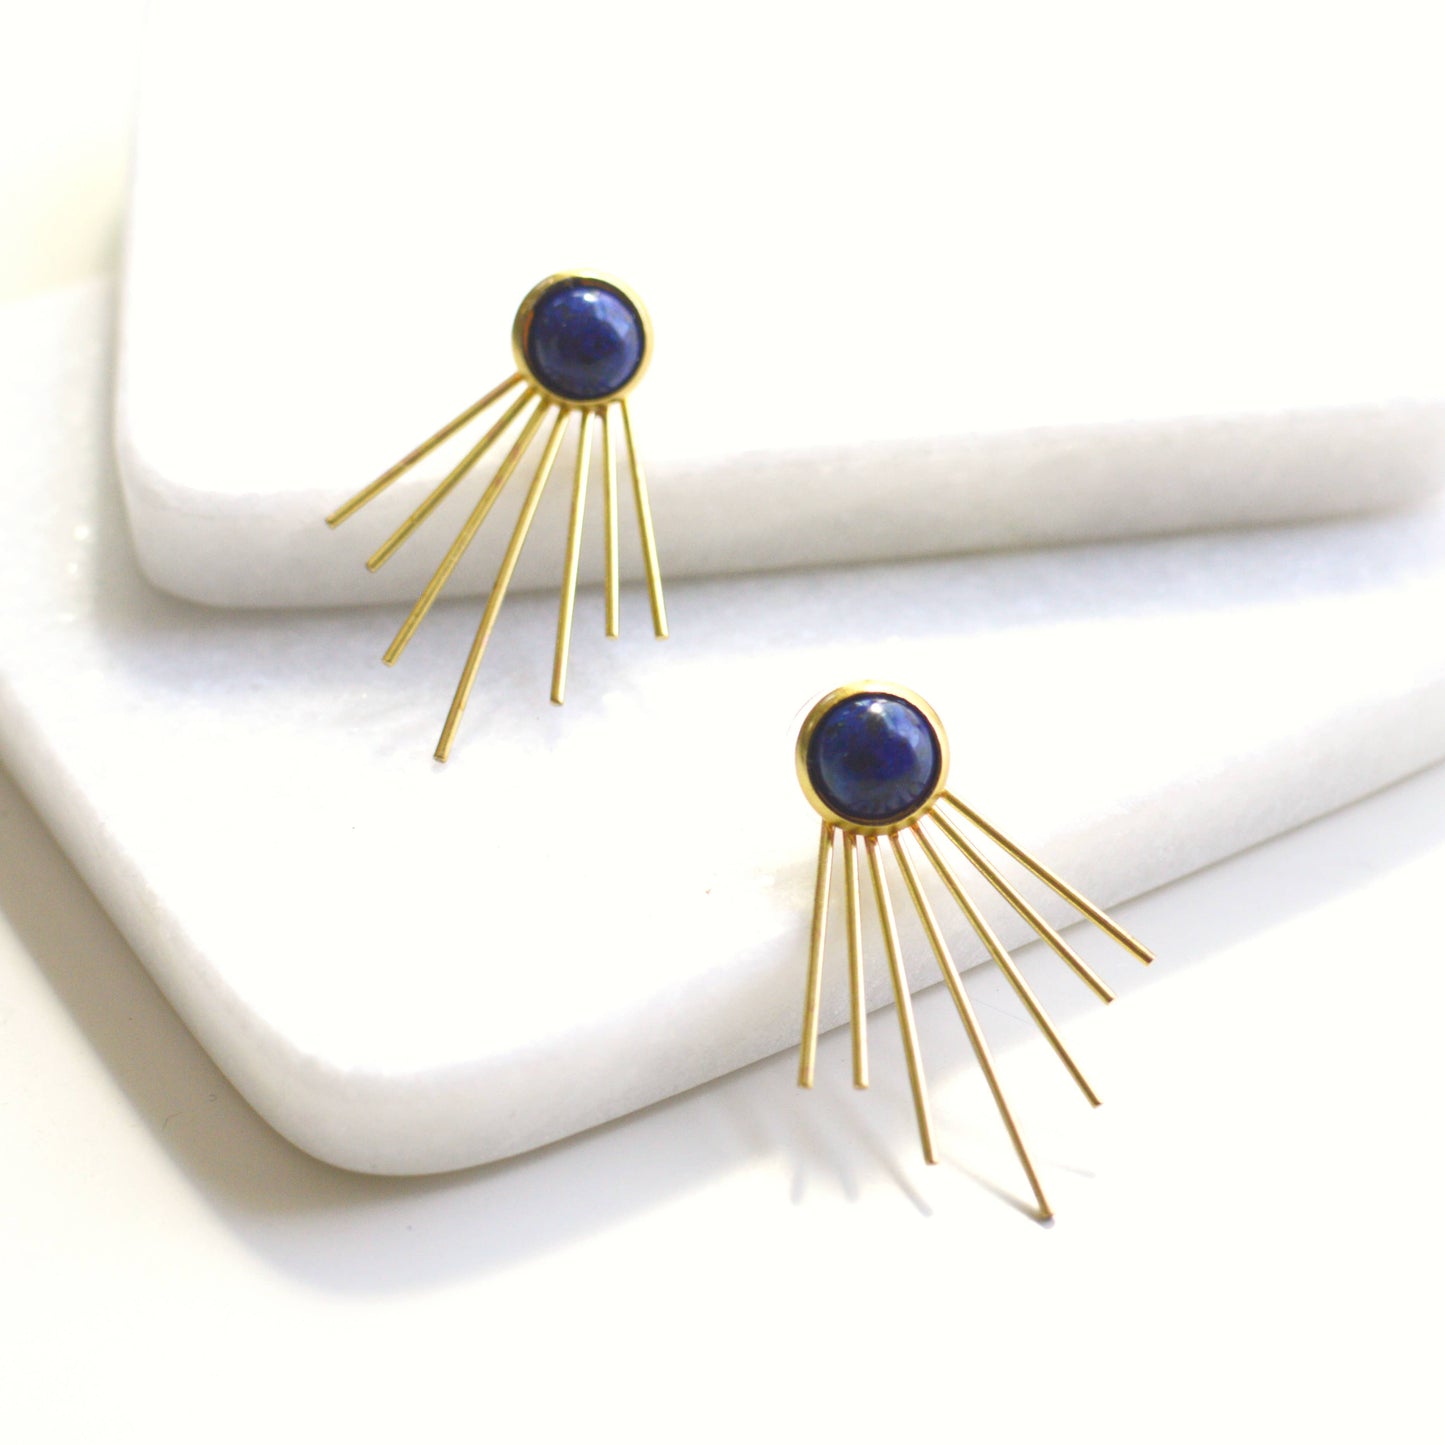 Ker-ij Jewelry - Judy Jacket Earrings: Lapis Lazuli